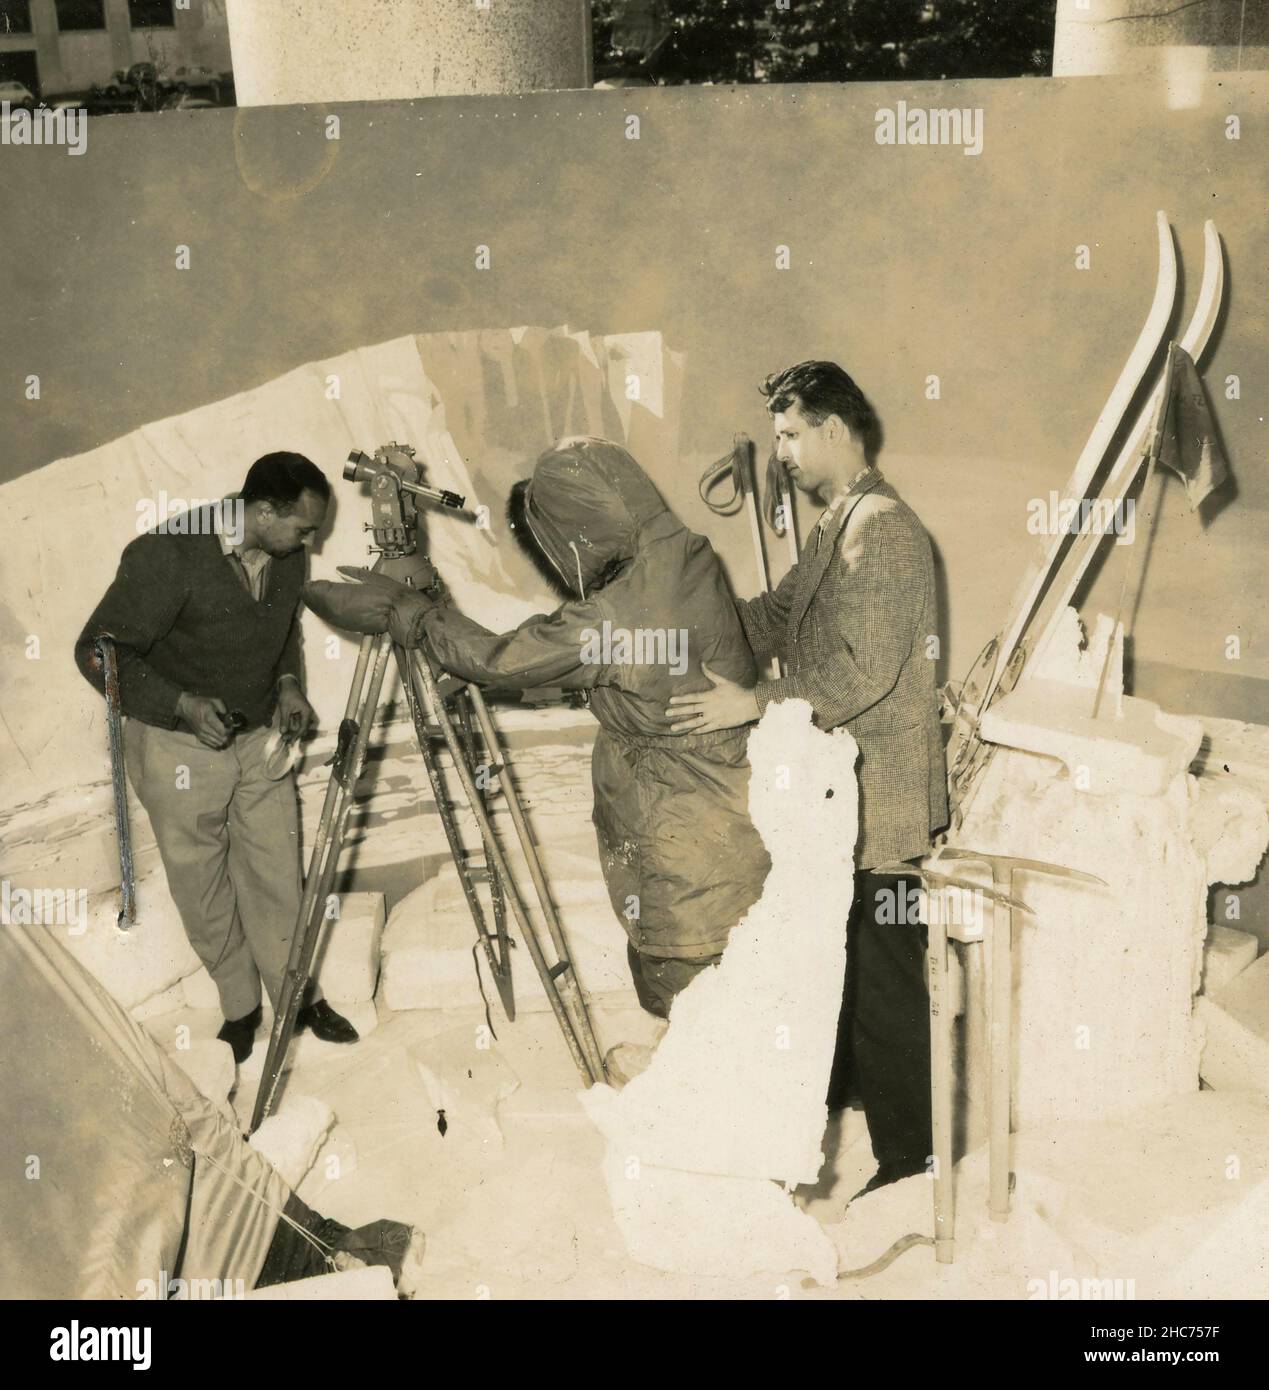 Mise en scène de l'expérience scientifique de l'expédition polaire à la foire de l'Antarctique au Palazzo dei Congressi, Rome, EUR, Italie 1962 Banque D'Images